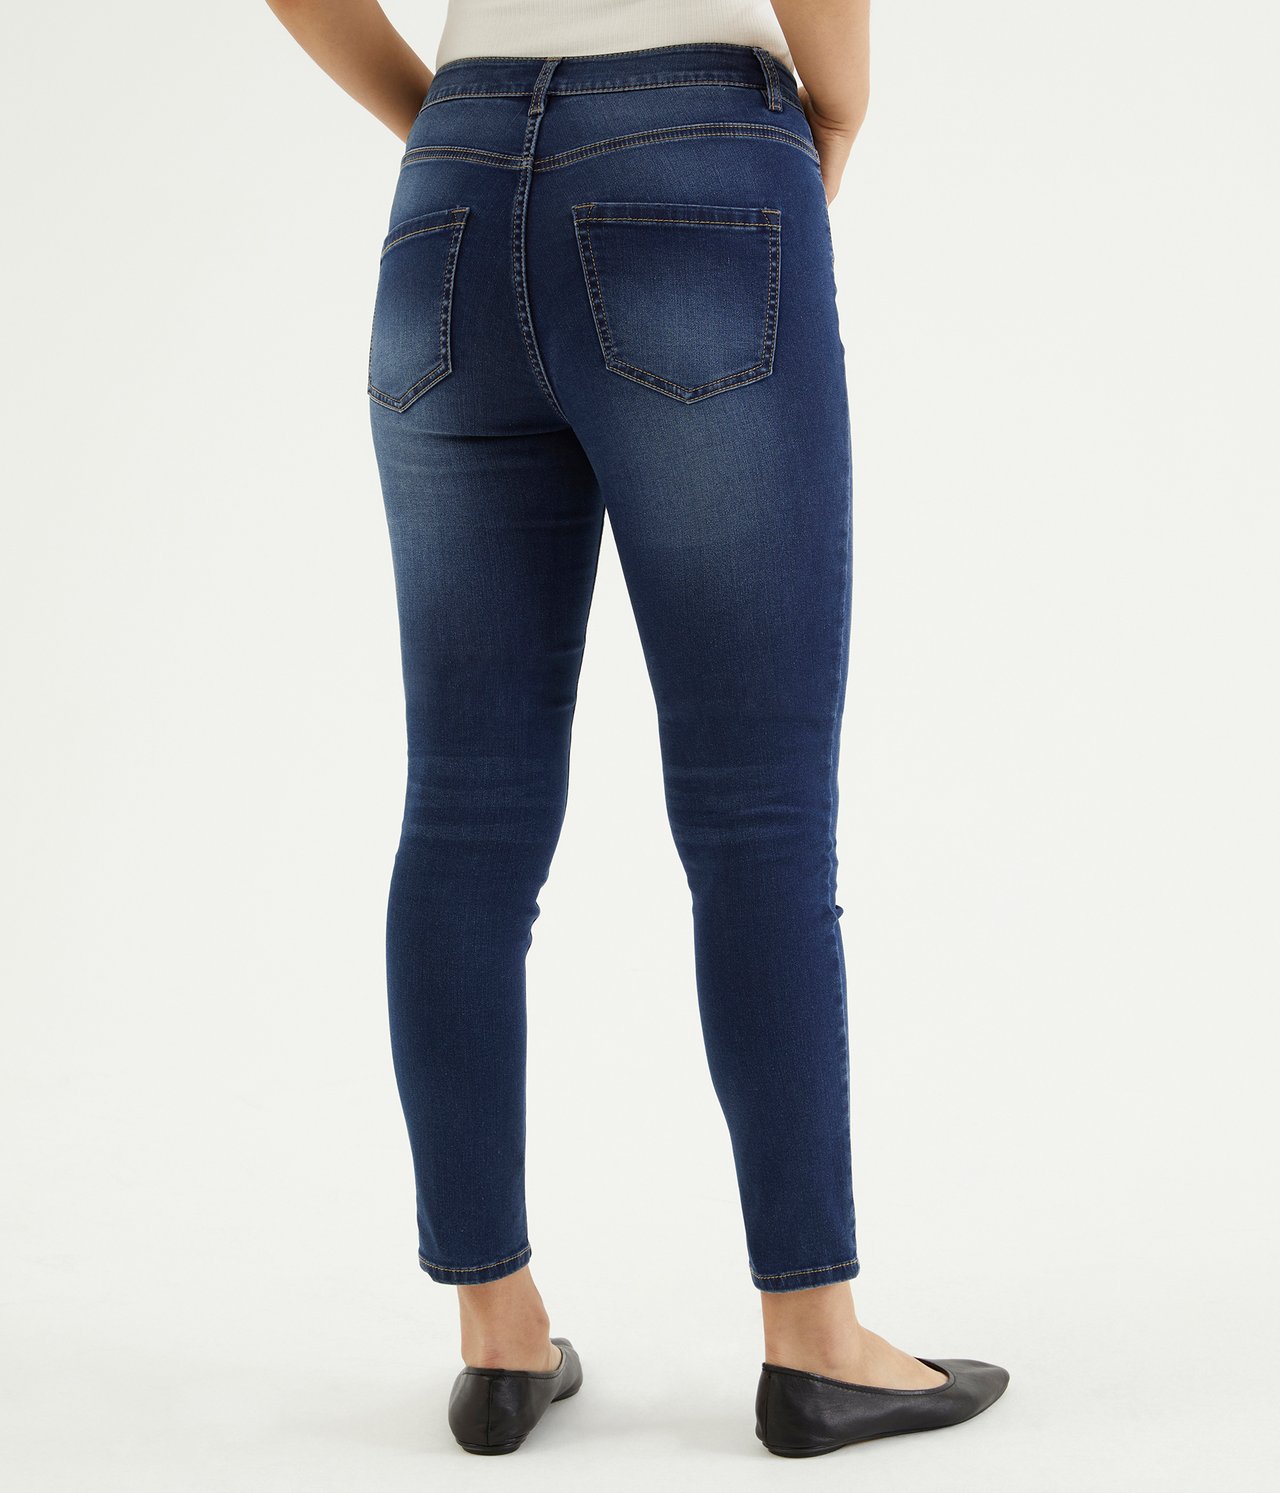 Super slim jeans short leg - Tumma denimi - 4